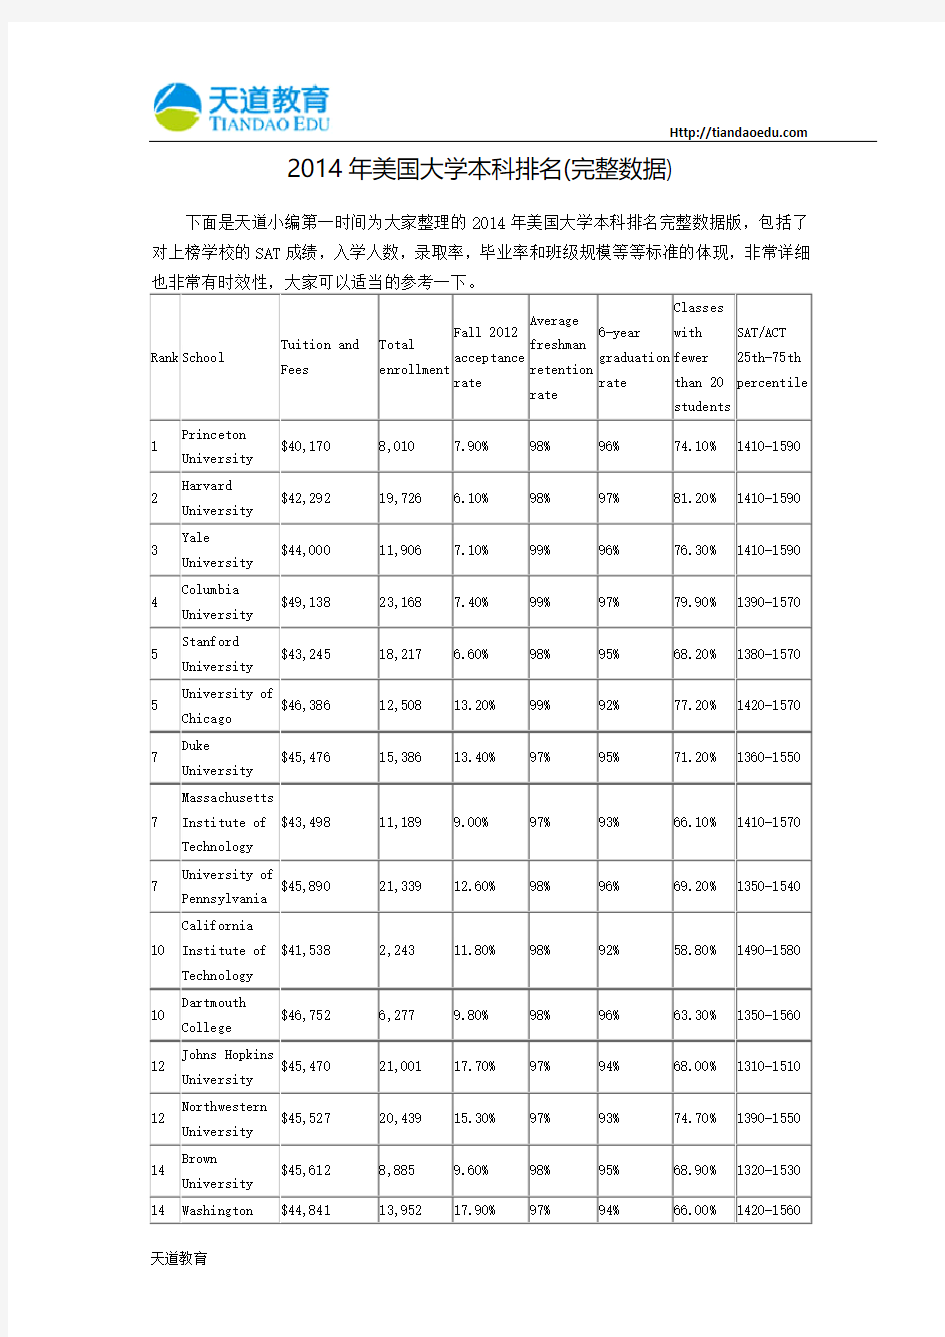 【天道独家】2014年美国大学本科排名(完整数据)